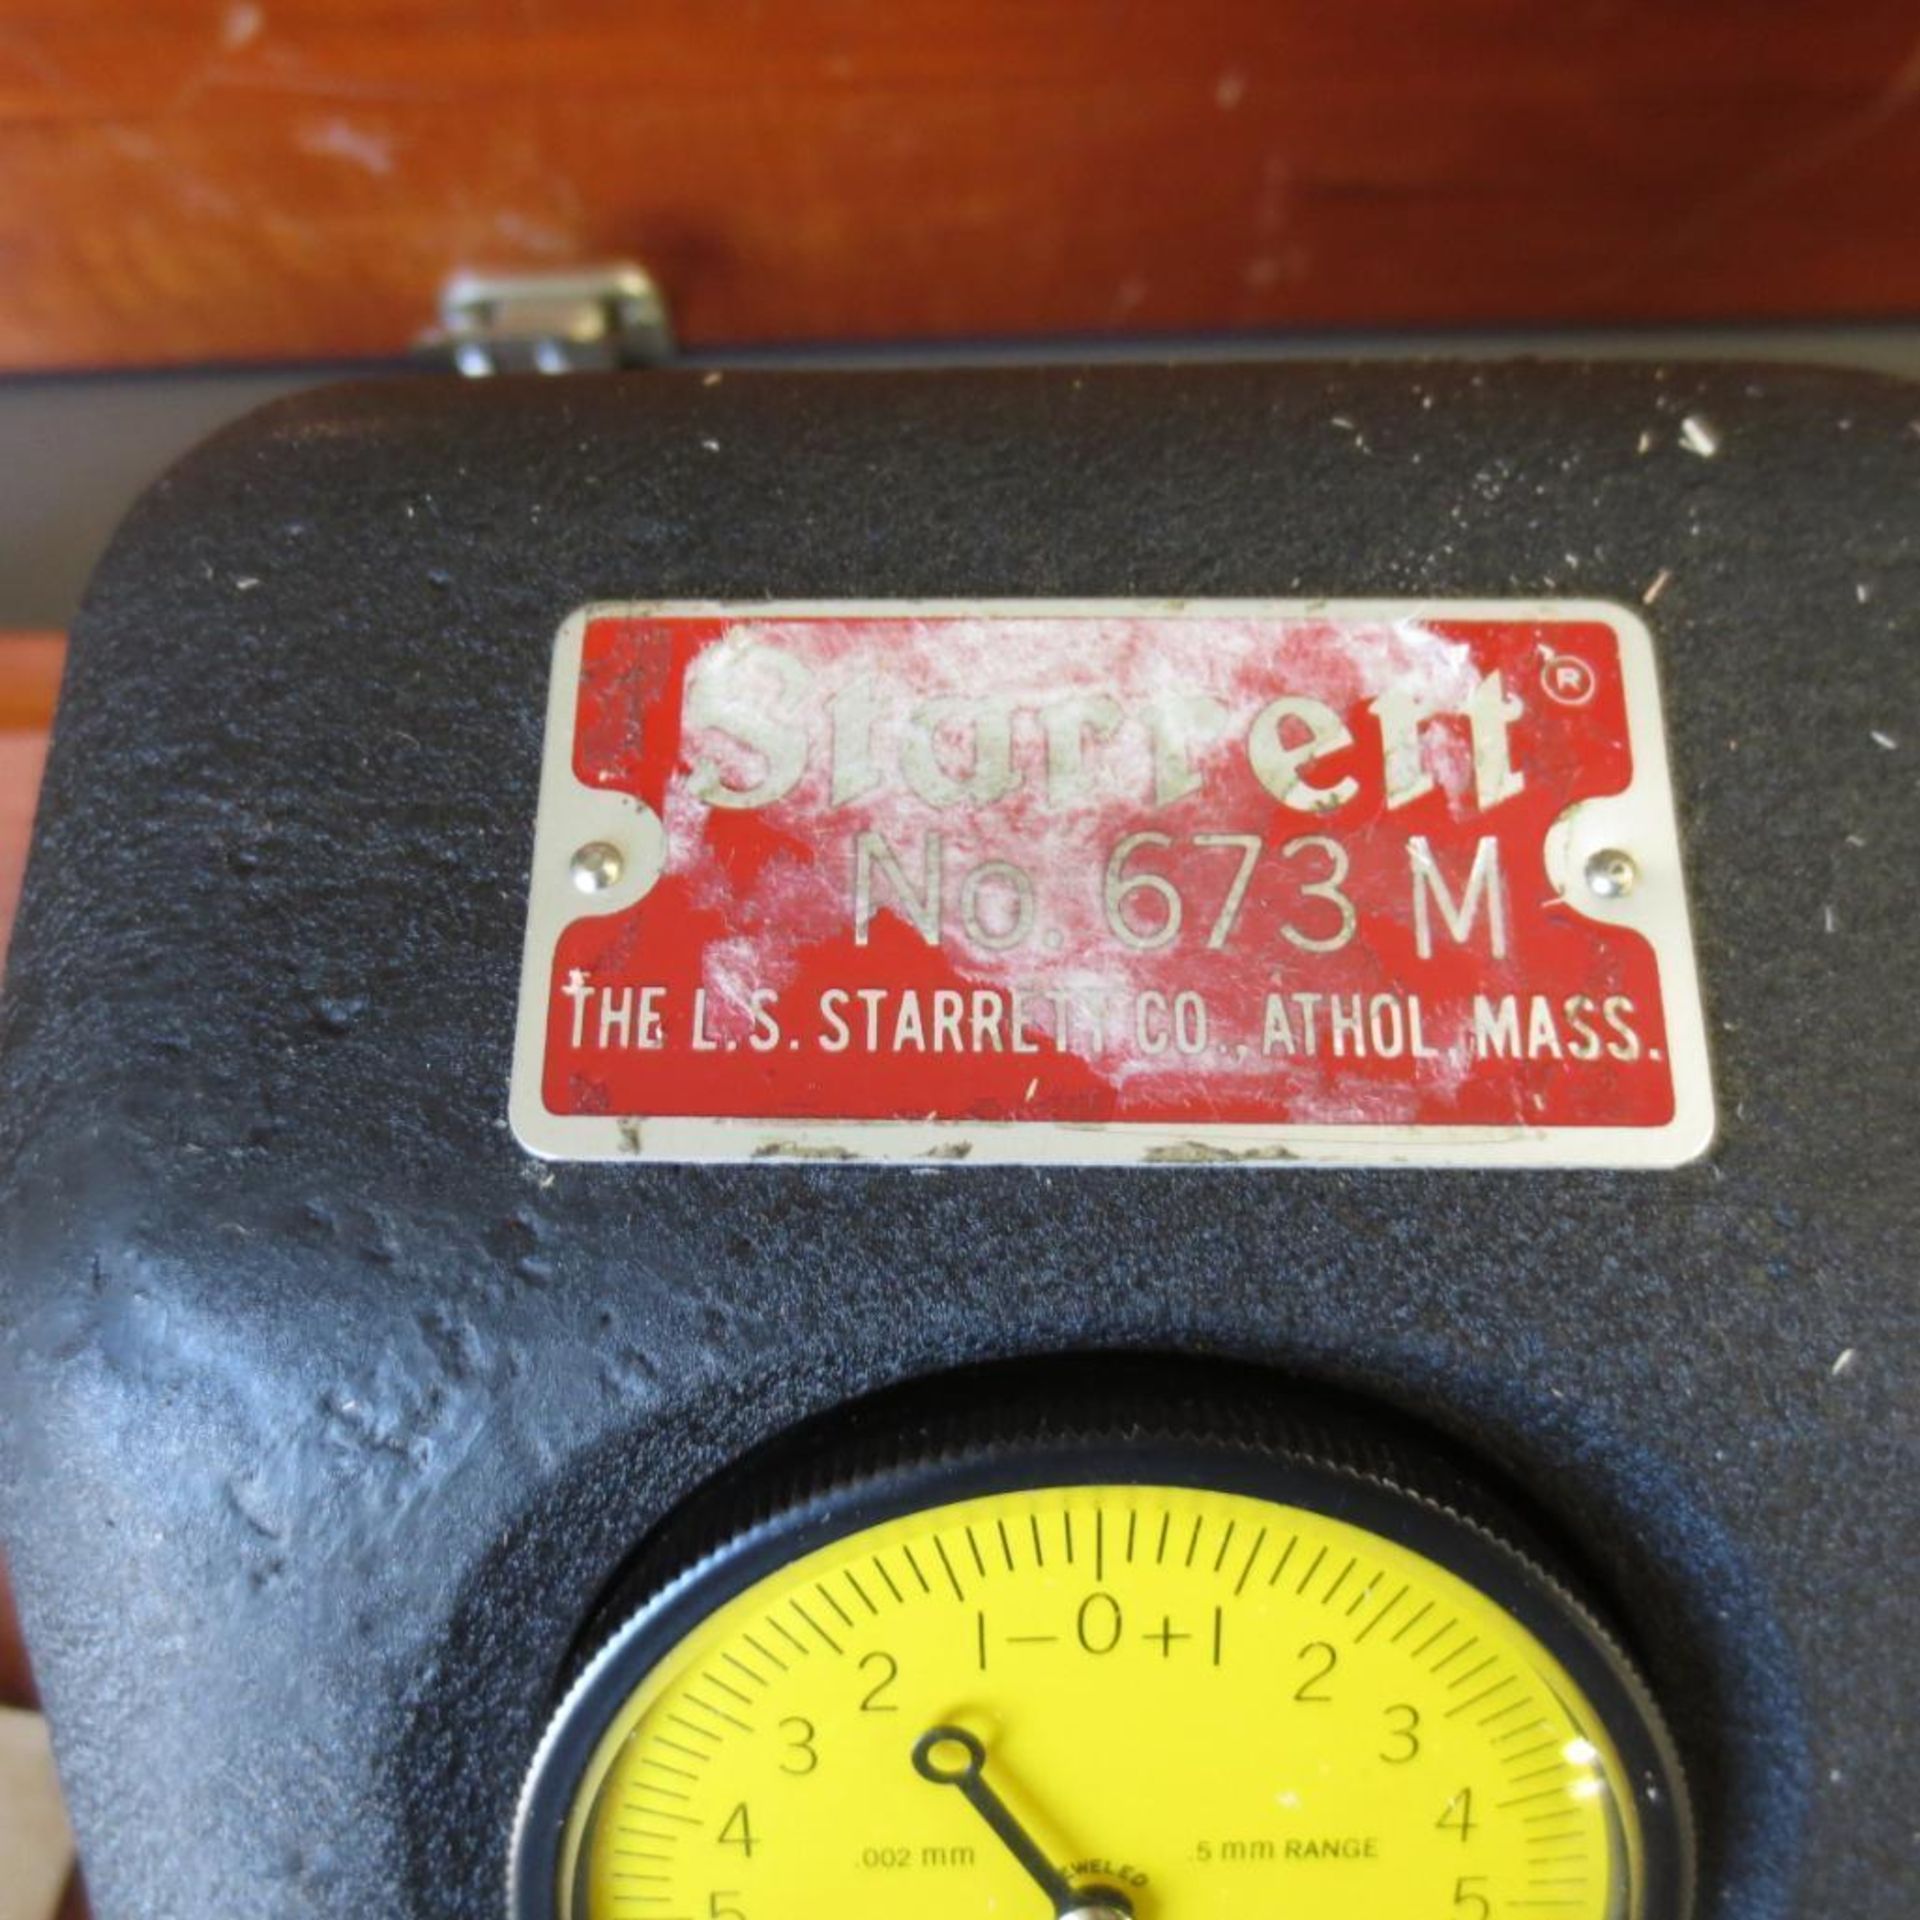 Starrett No 673M Bench Micrometer - Image 2 of 4